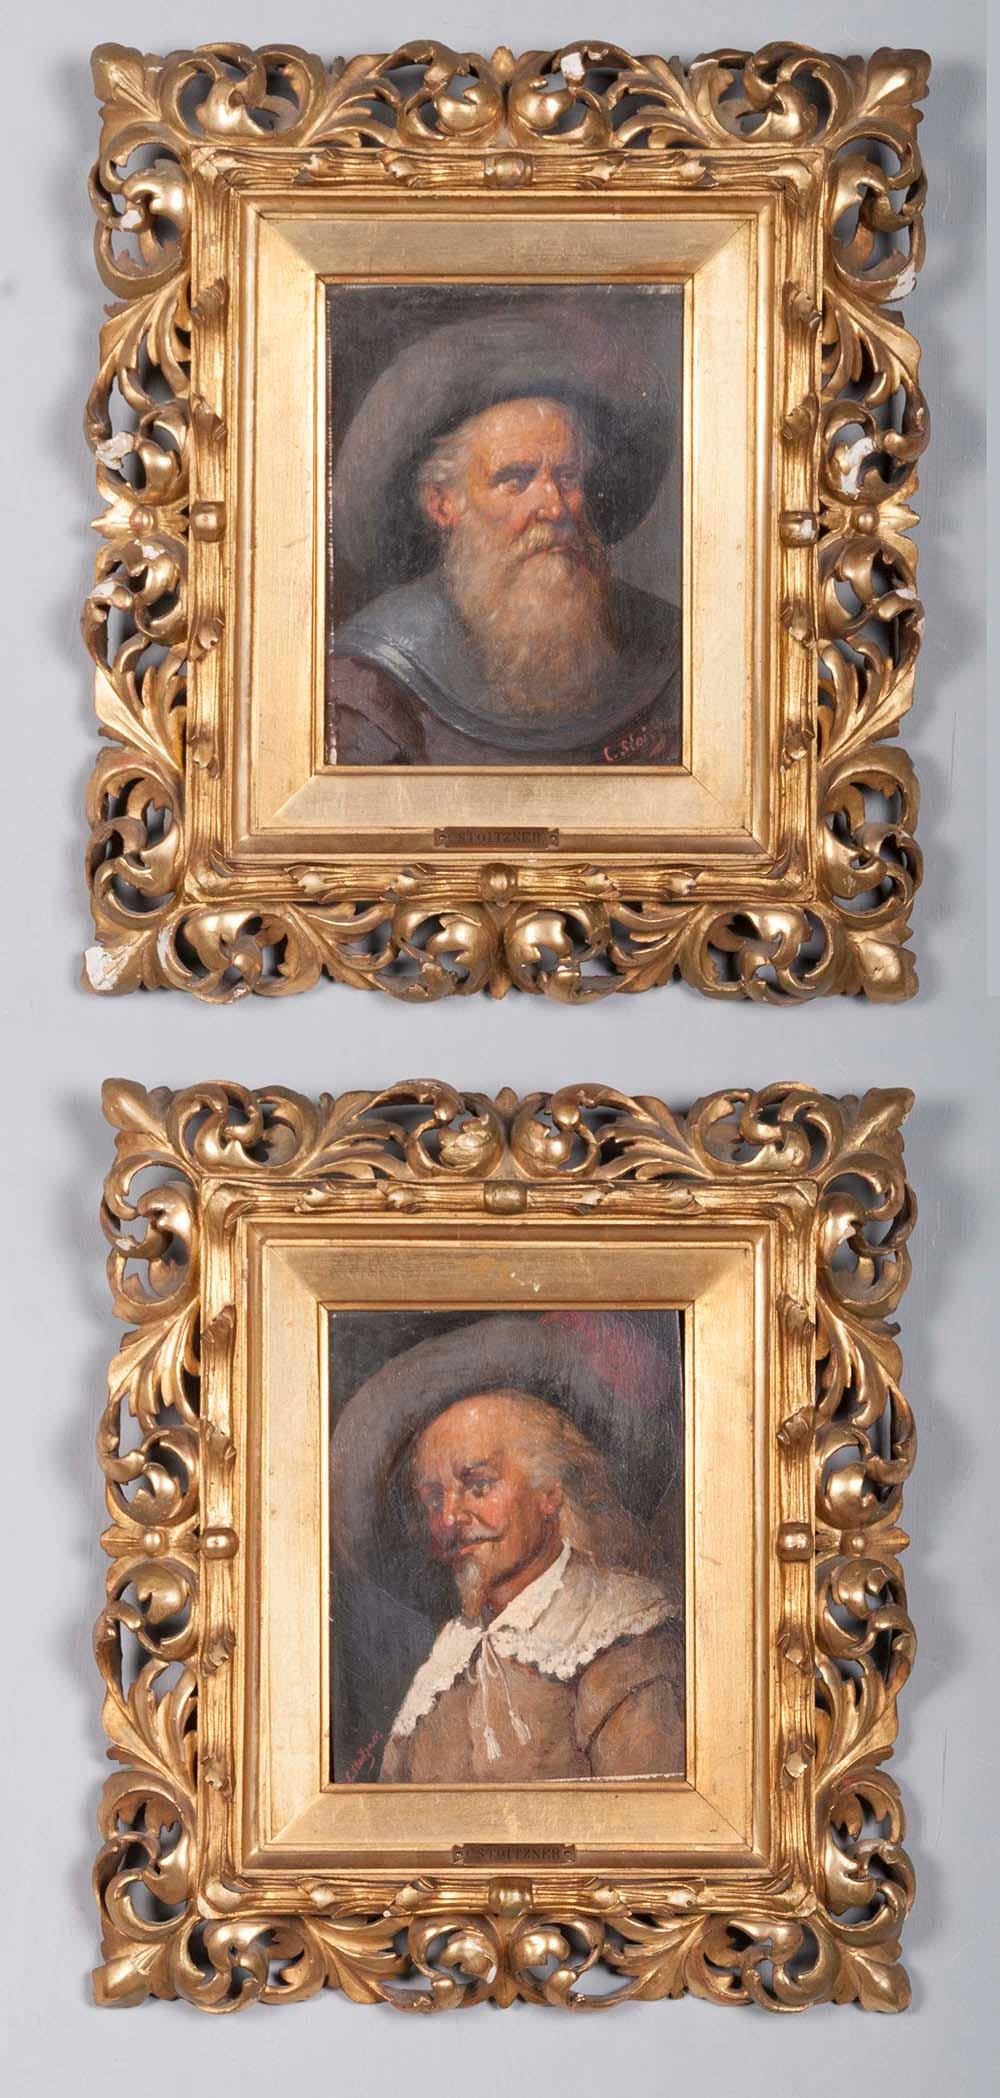 Deux tableaux représentant deux hommes habillés à la mode de la Renaissance.
Peinture à l'huile sur panneau. Les cadres sont sculptés et dorés à la feuille d'or. Il manque ici et là quelques petits morceaux de feuille d'or.

Vous trouverez